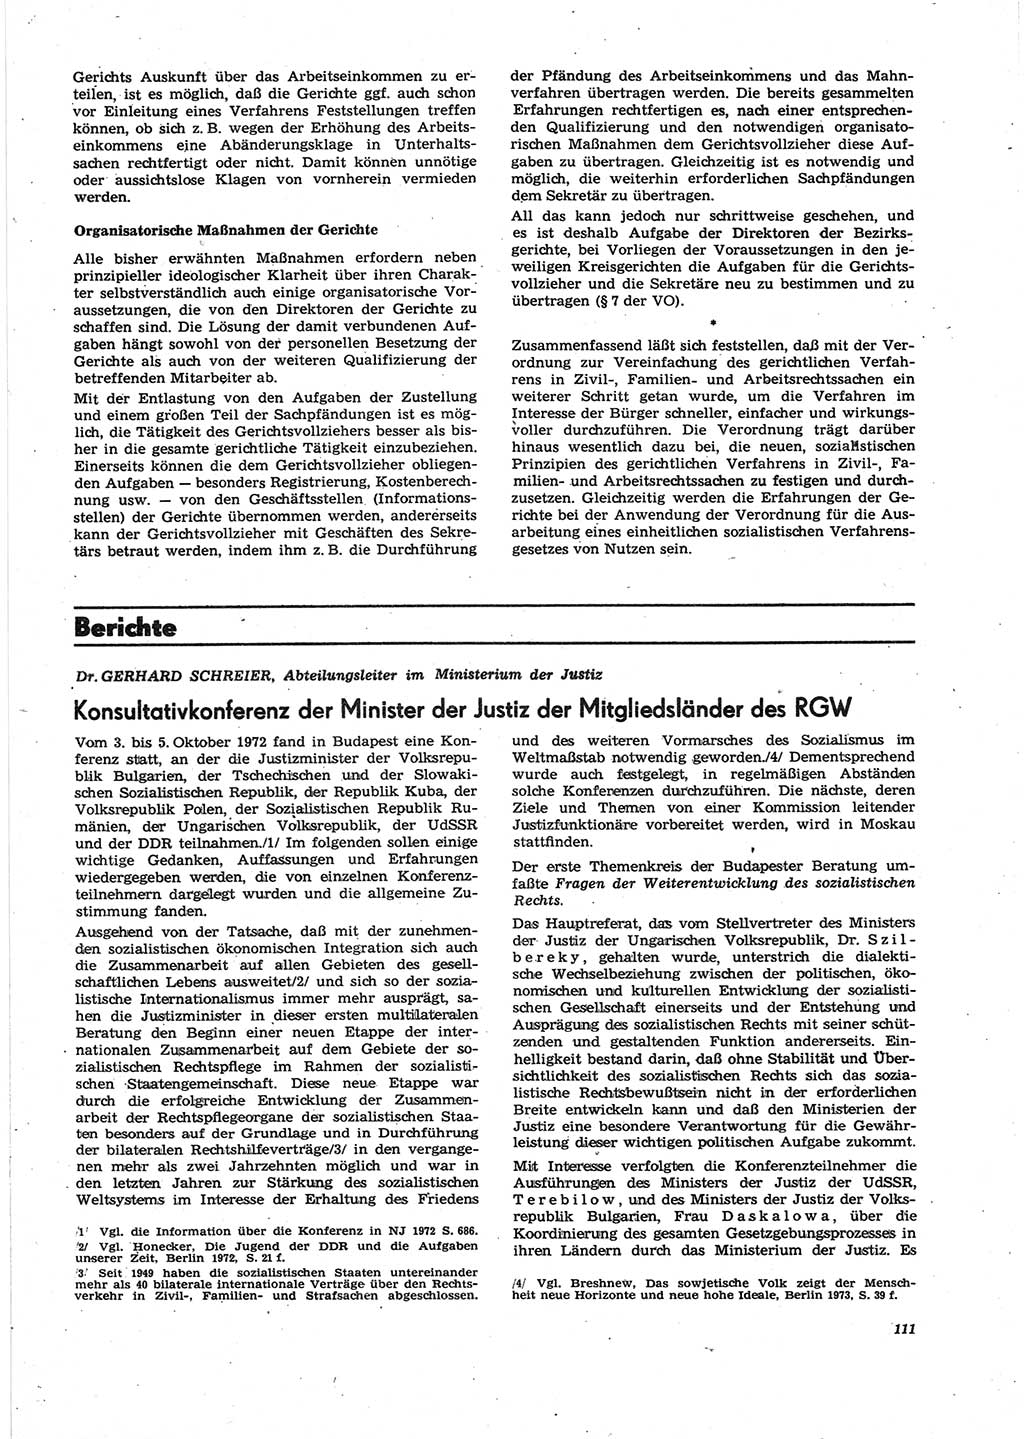 Neue Justiz (NJ), Zeitschrift für Recht und Rechtswissenschaft [Deutsche Demokratische Republik (DDR)], 27. Jahrgang 1973, Seite 111 (NJ DDR 1973, S. 111)